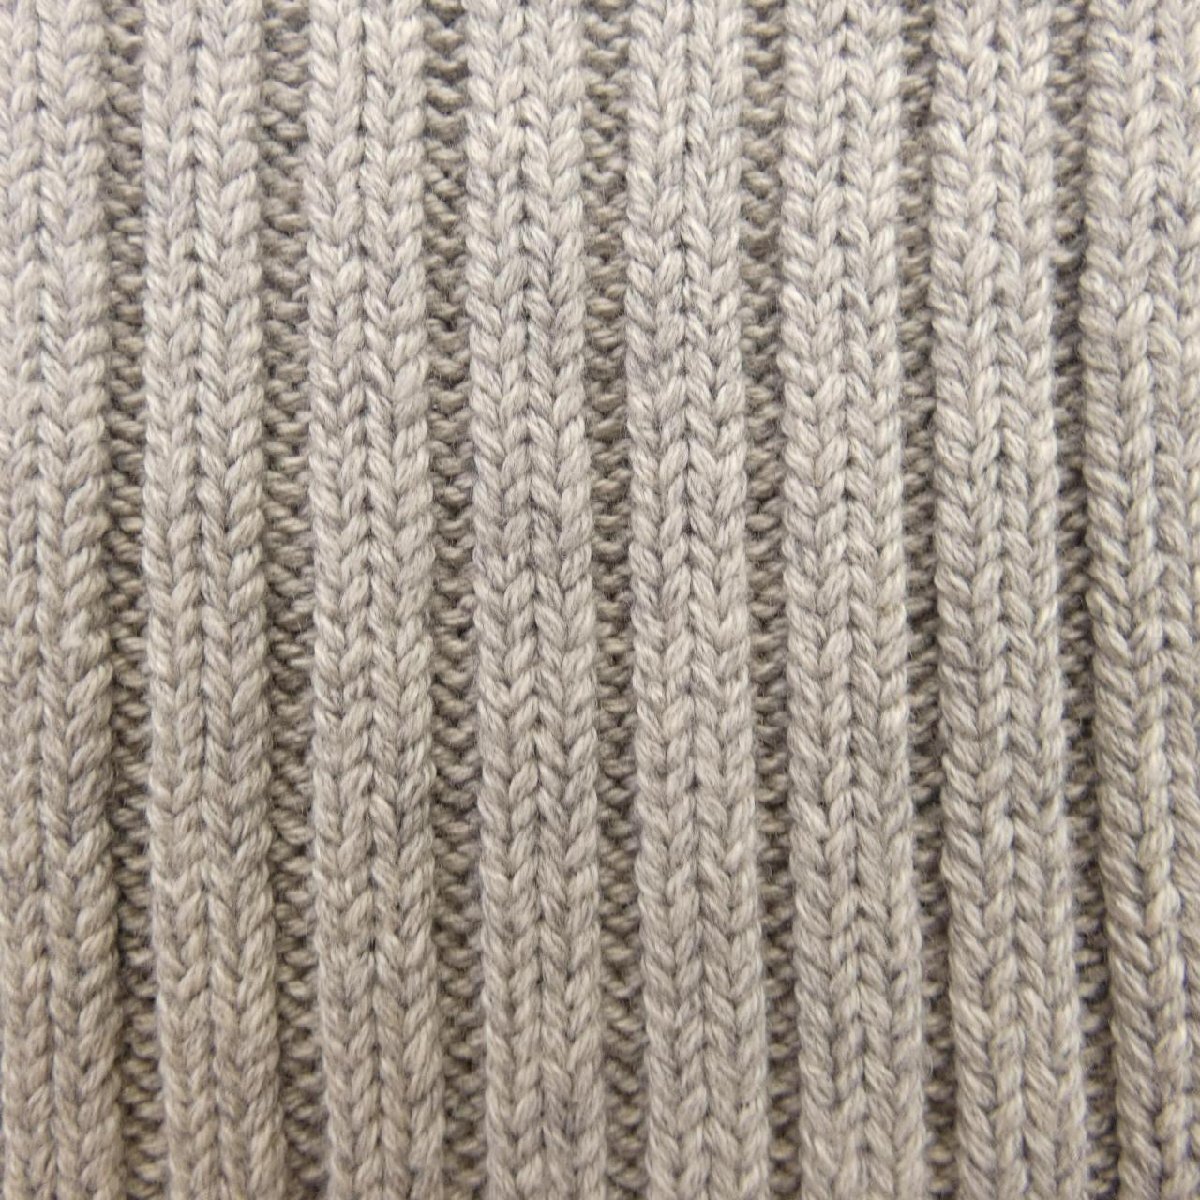  M M Schic sMM6 knitted 